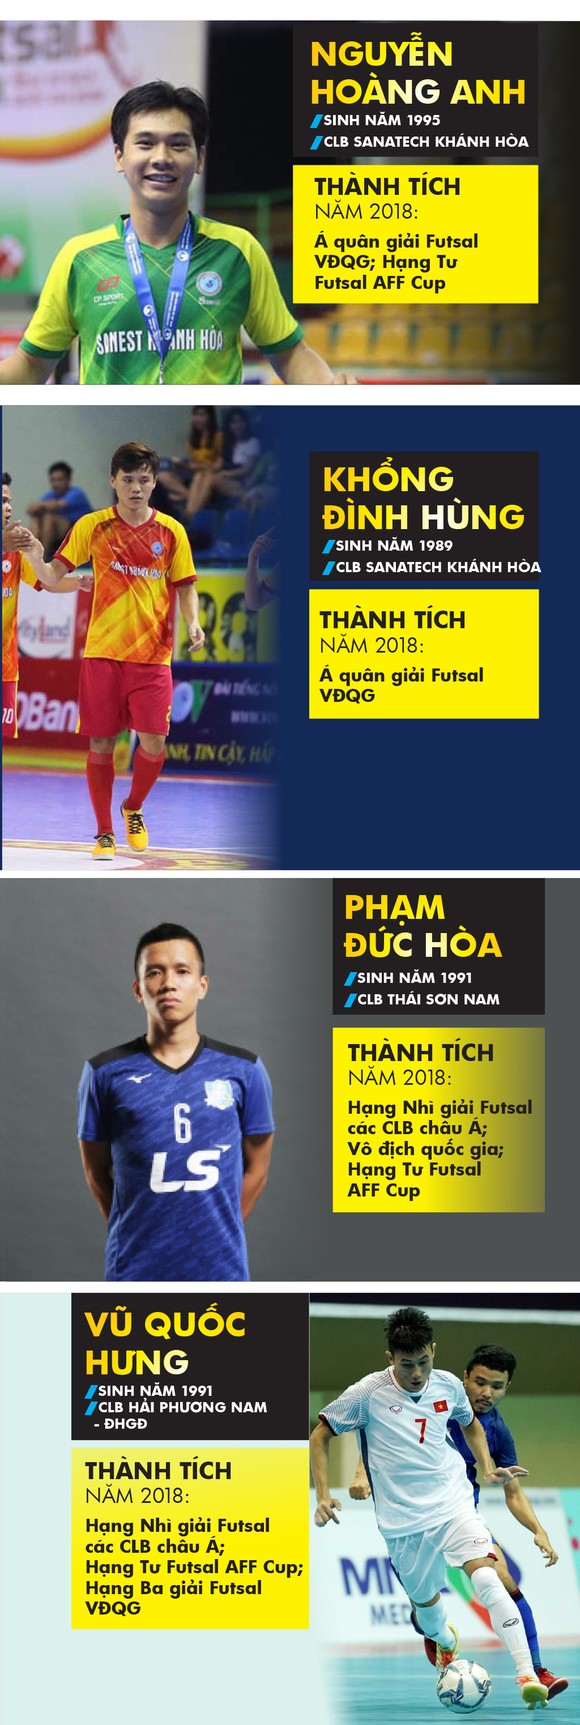 Những cầu thủ nào là ứng viên giải Quả bóng vàng futsal 2018? ảnh 1